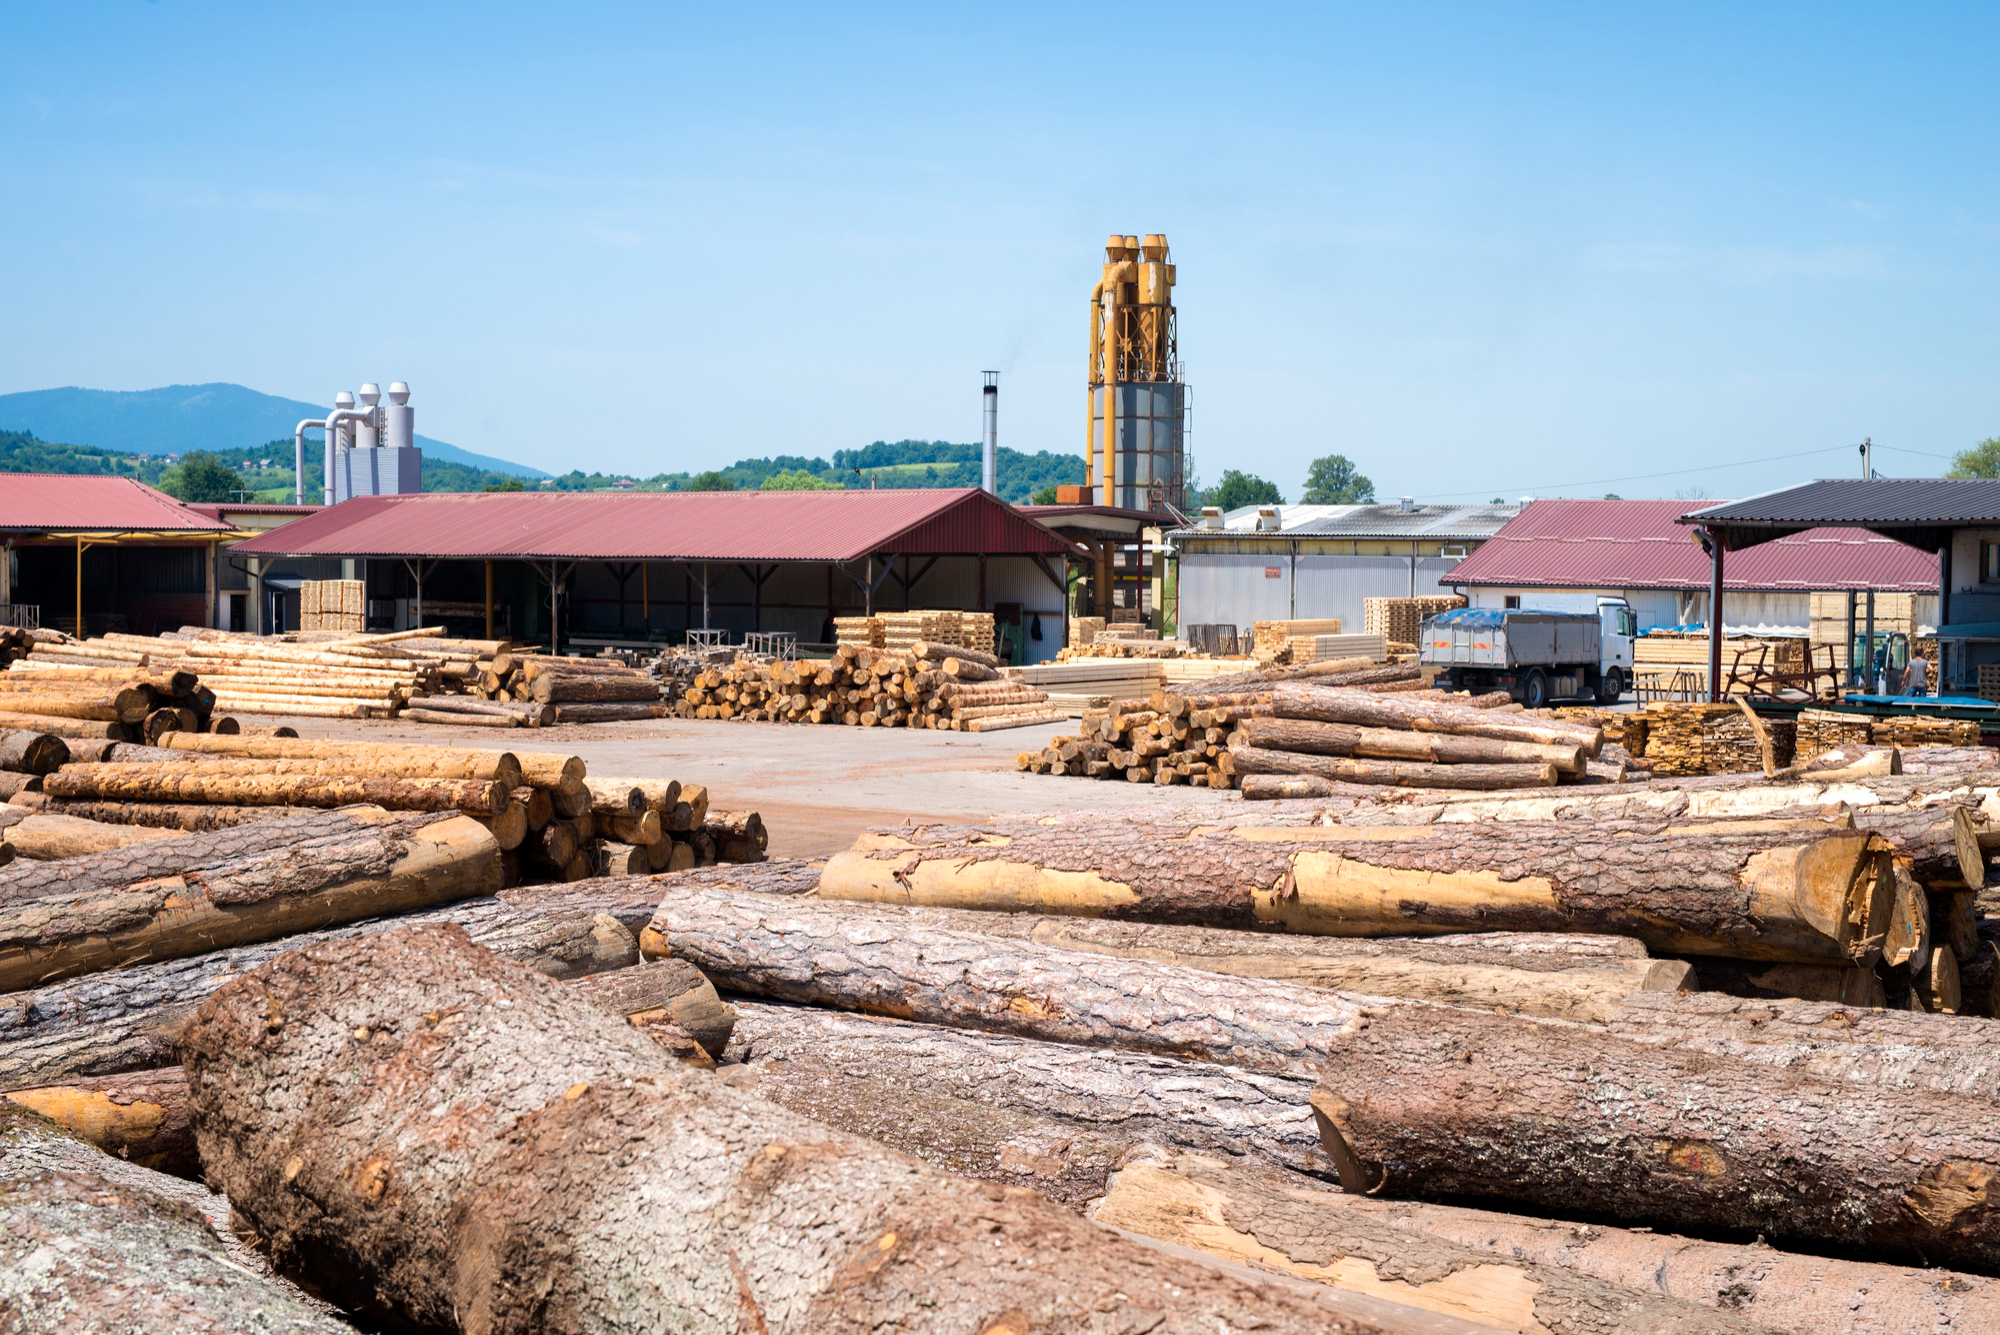 Nowoczesne technologie rewolucjonizujące przemysł drzewny